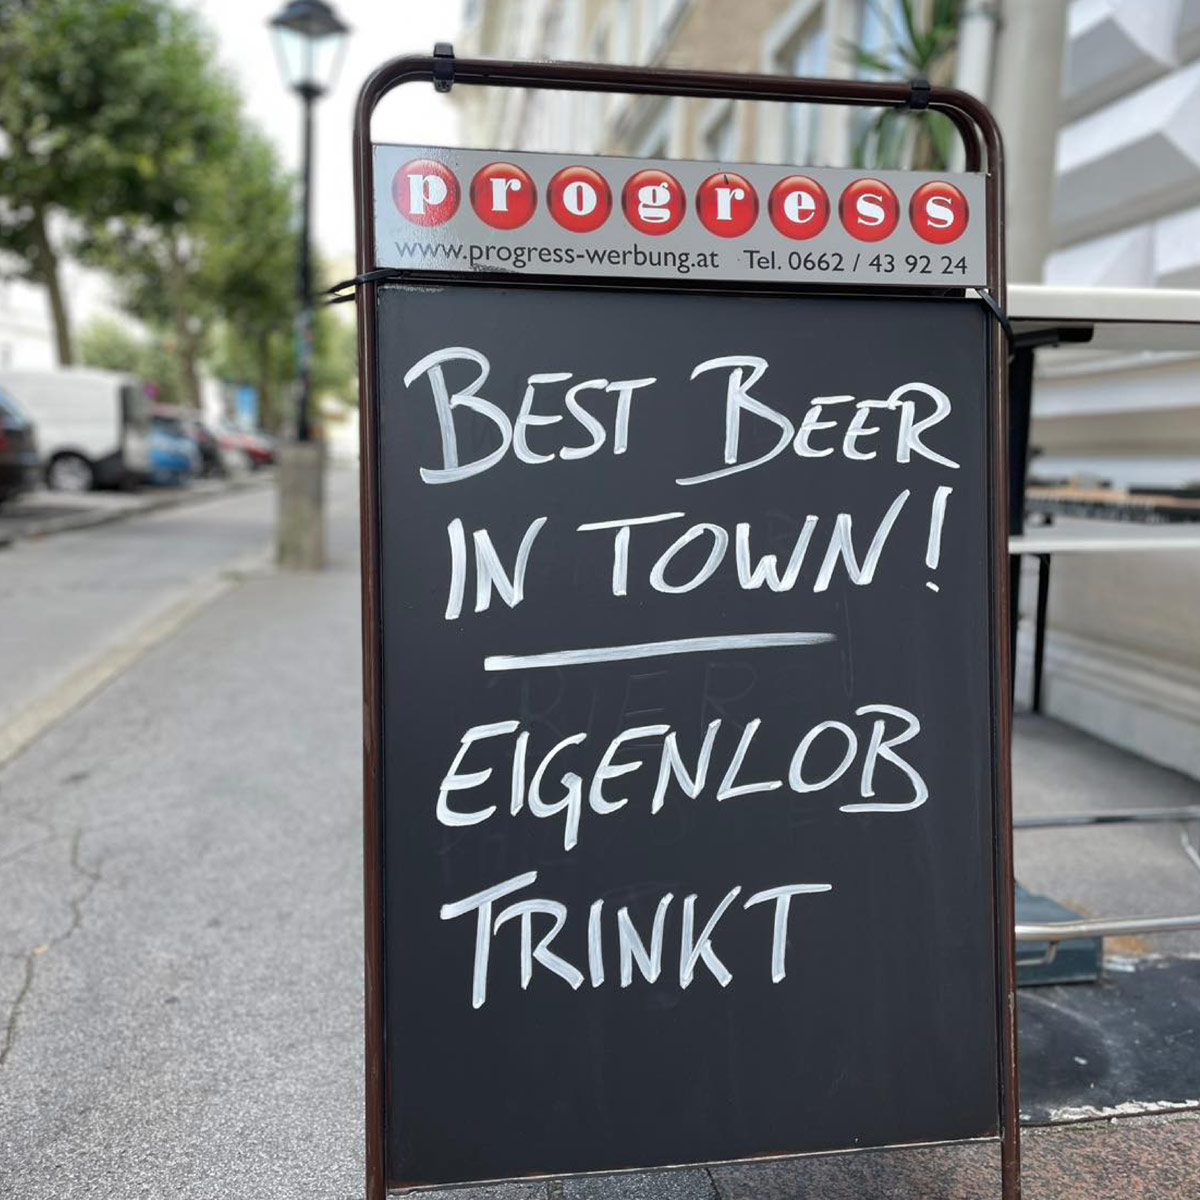 Best Beer In Town! Eigenlob Trinkt